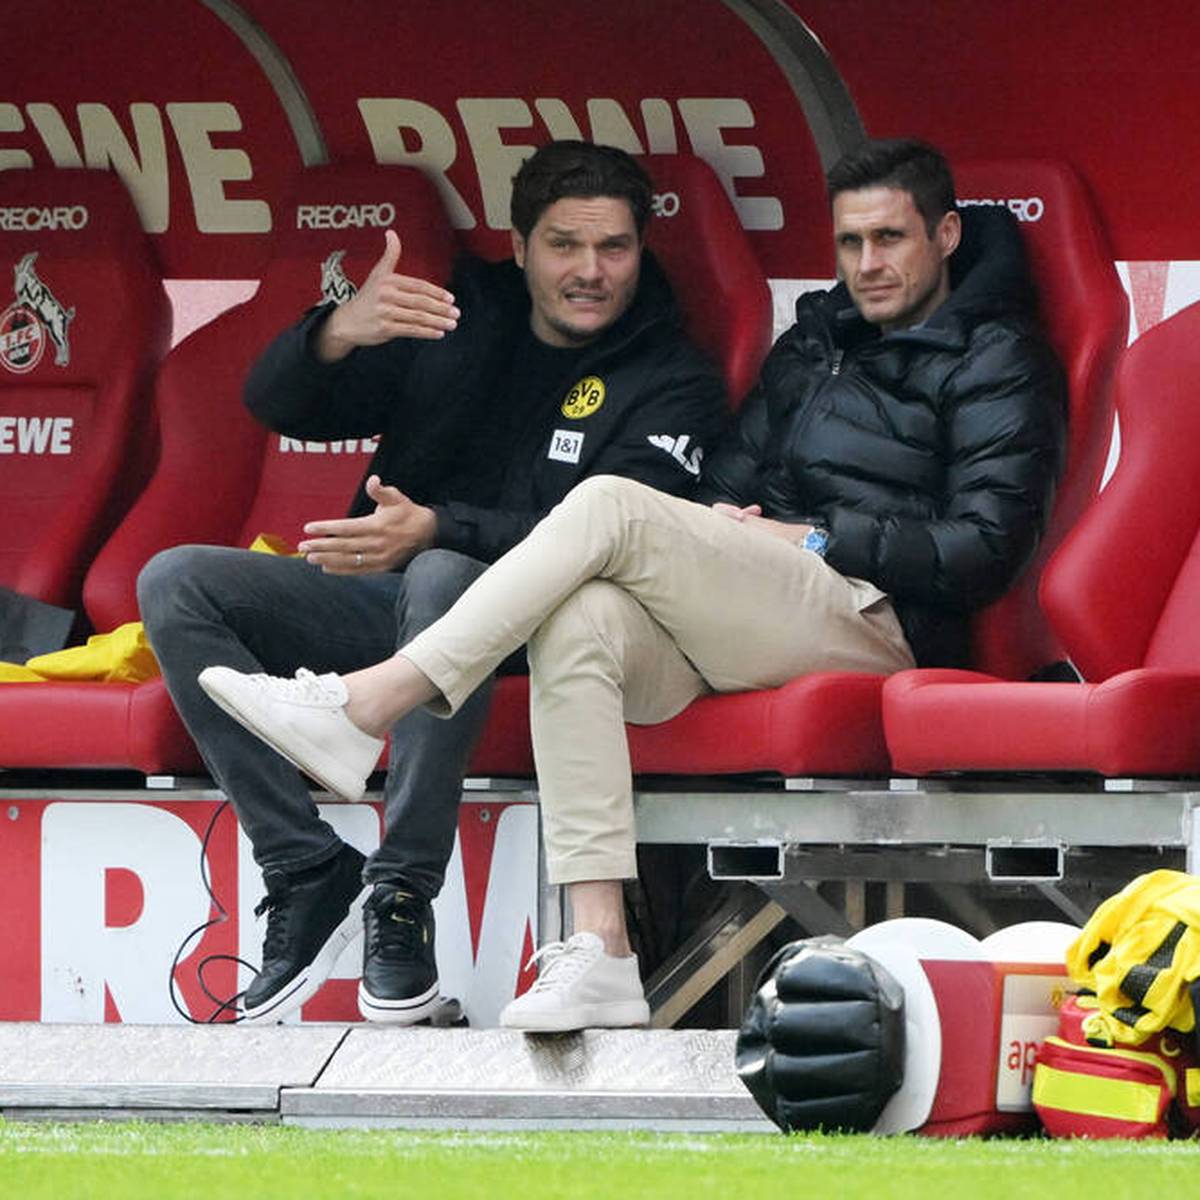 Borussia Dortmund verspielt beim 1. FC Köln erneut eine Führung. Trainer Edin Terzic wird auf der Pressekonferenz deutlich. Auch im SPORT1 Doppelpass wird das Thema heiß diskutiert.